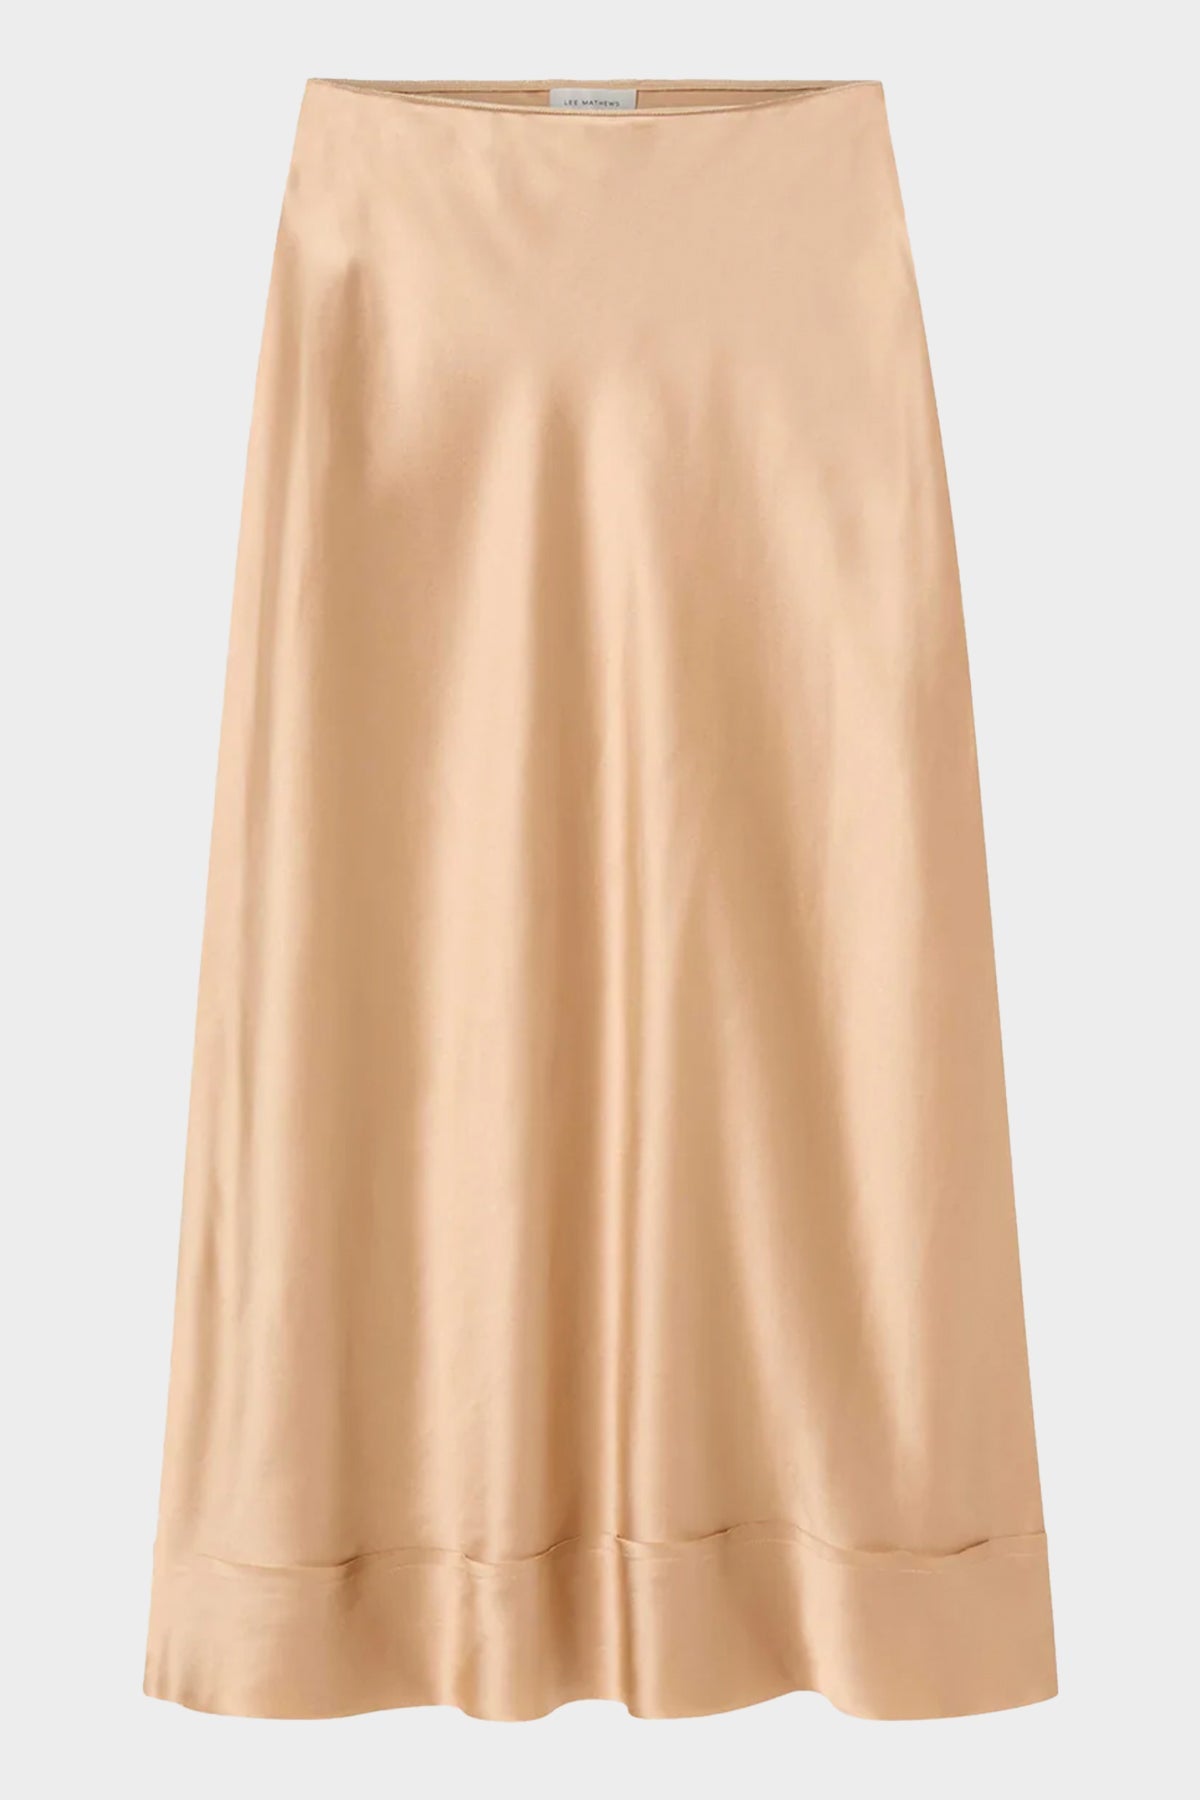 Stella Silk Satin Skirt in Honey - shop-olivia.com